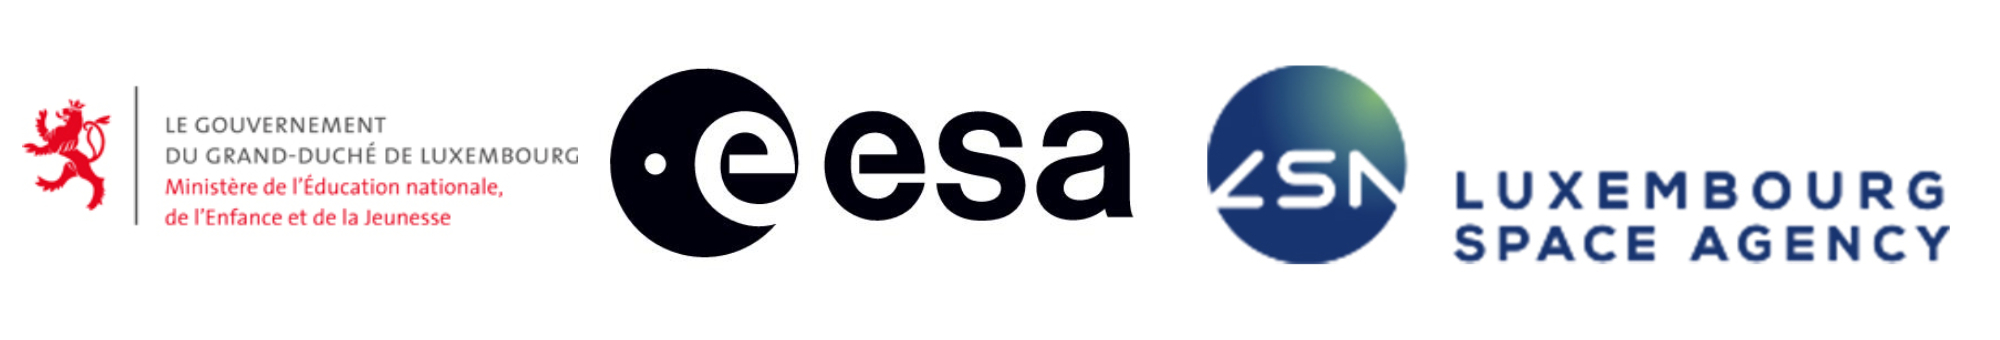 ESERO Logo